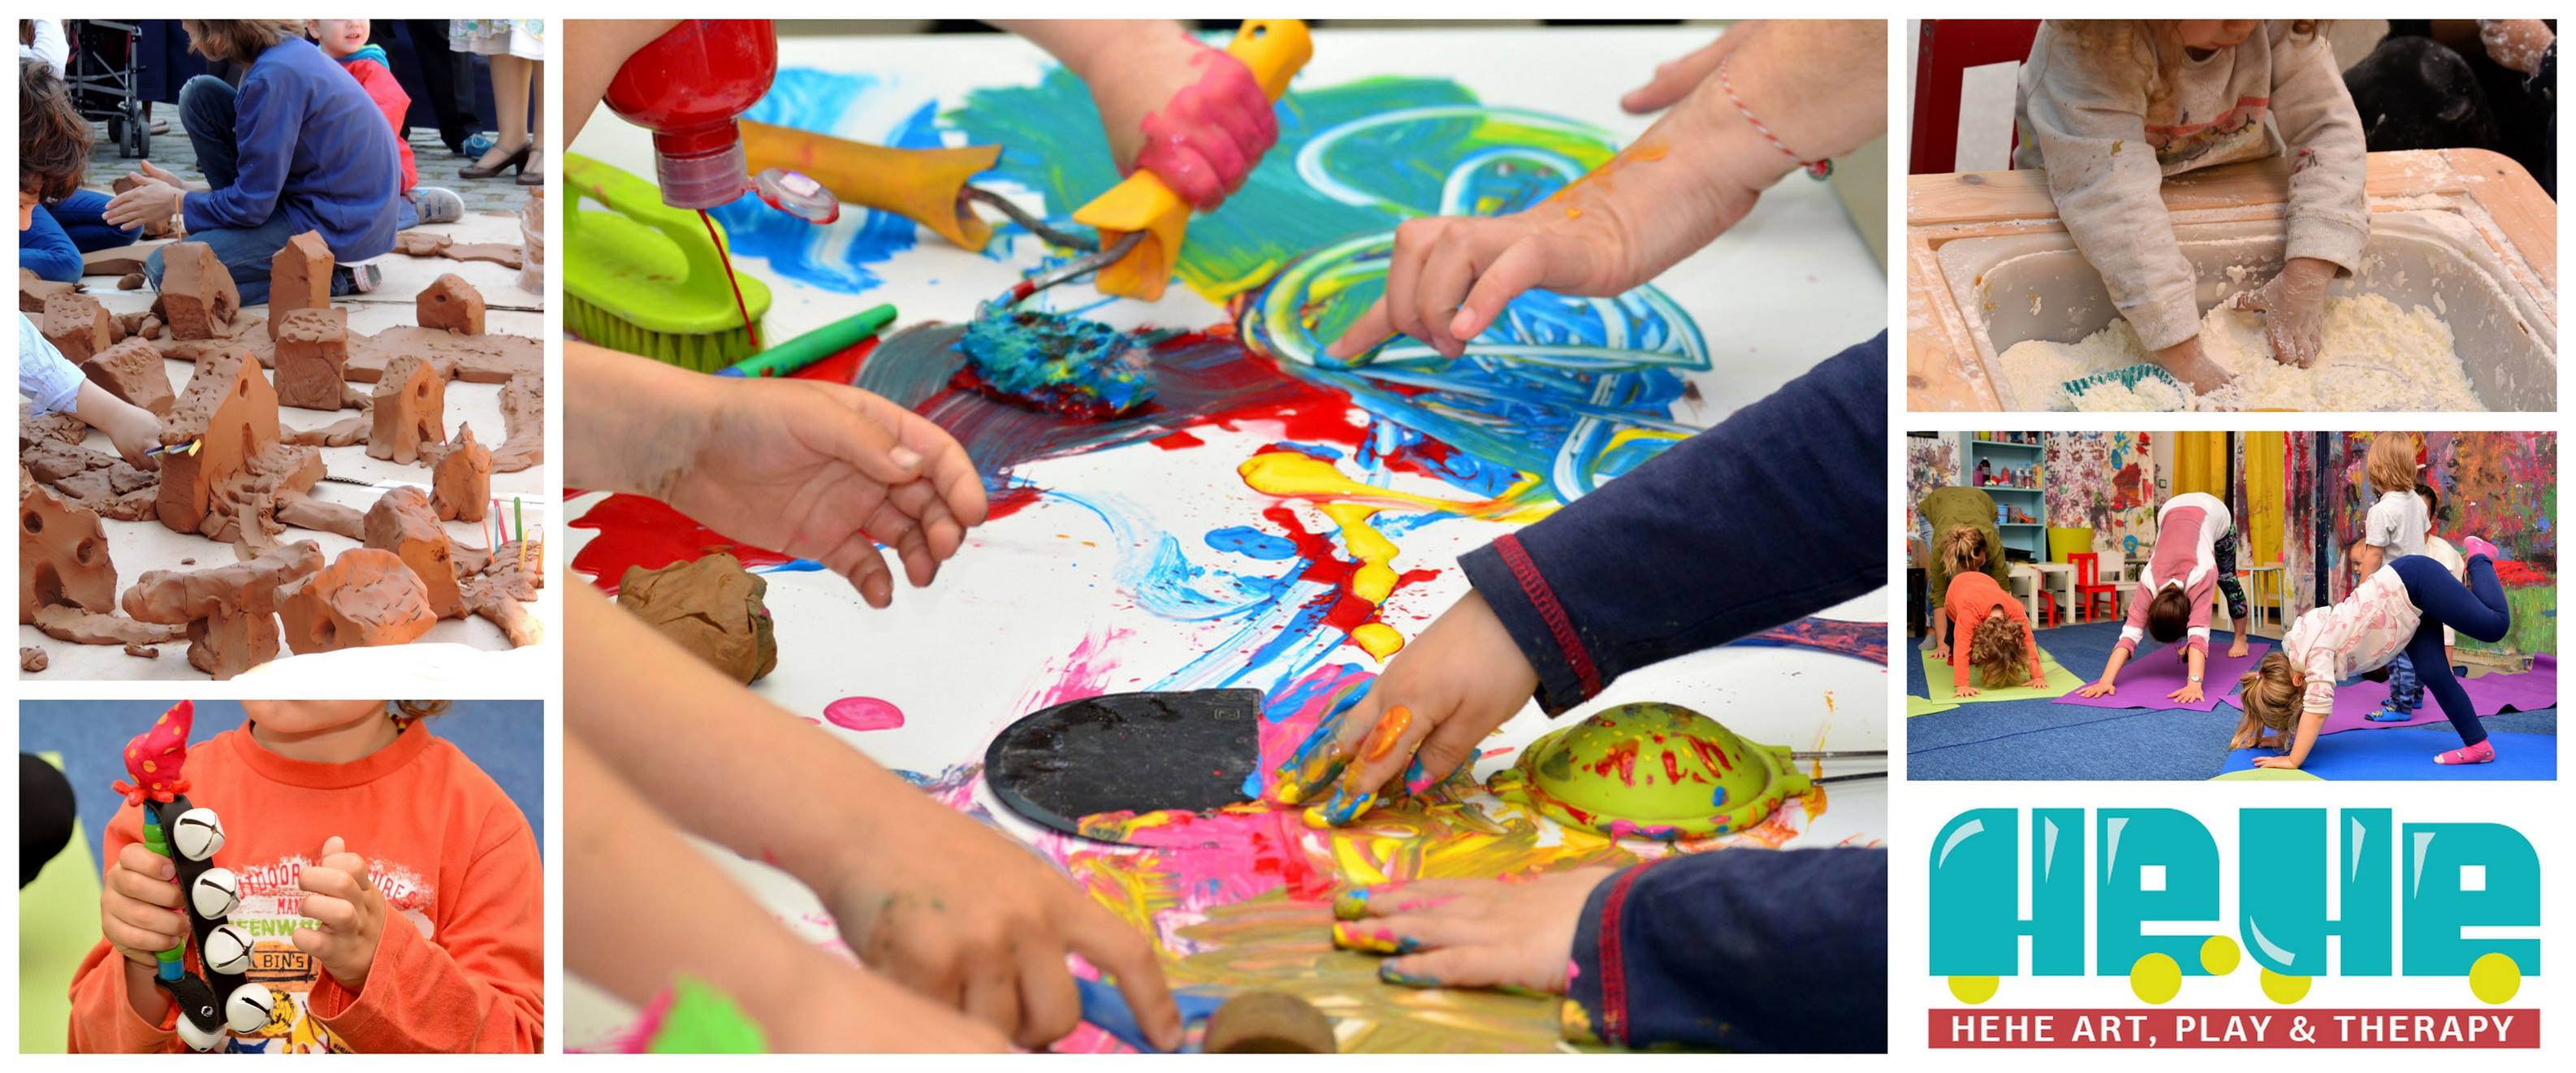 Θεραπευτικές ομάδες παιχνιδιού και τέχνης για παιδιά 5-10 ετών